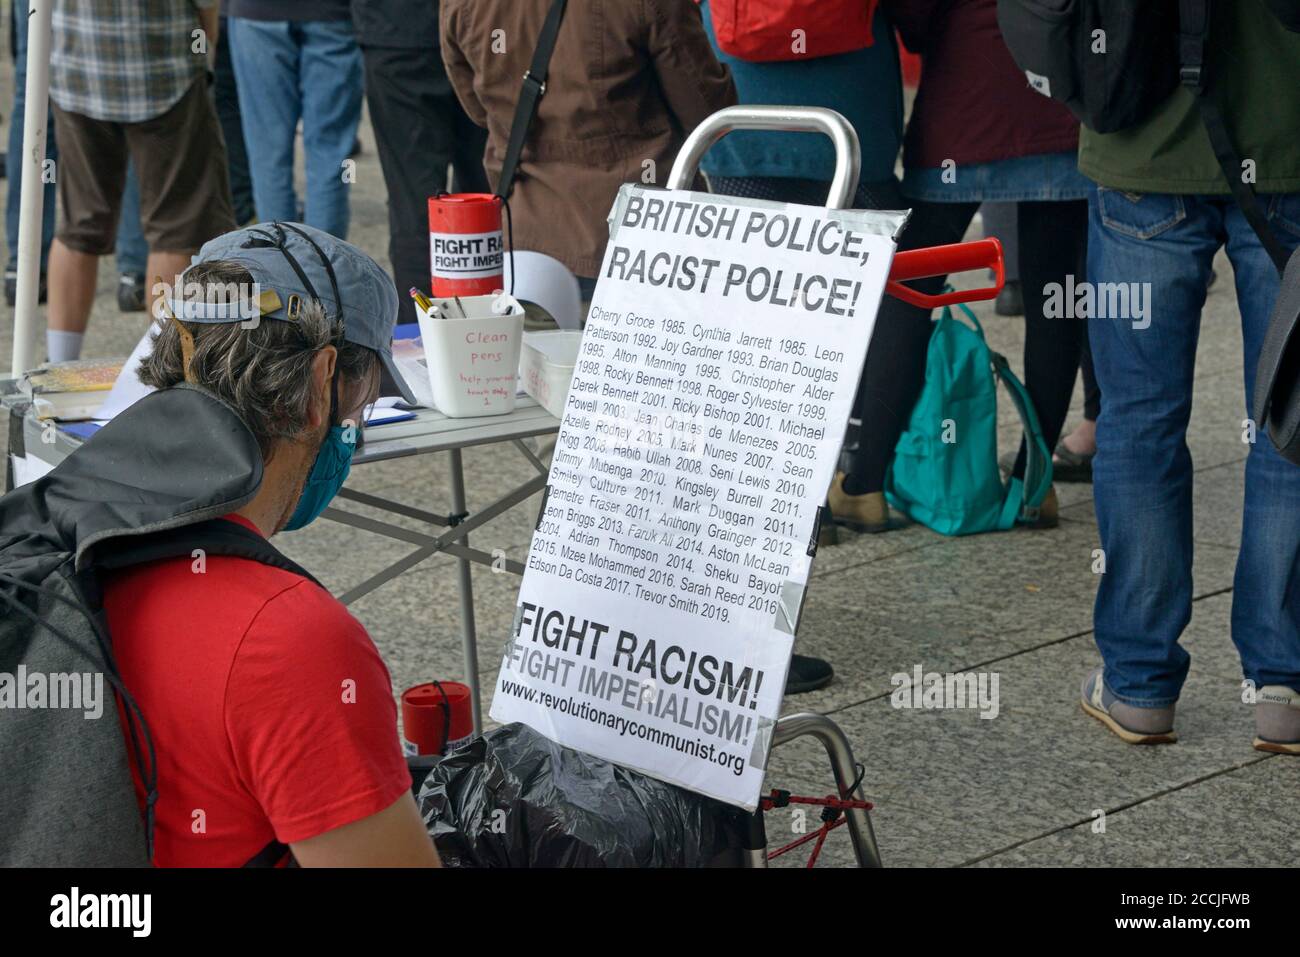 Ala izquierda, Anti Police, protester, Nottingham Foto de stock